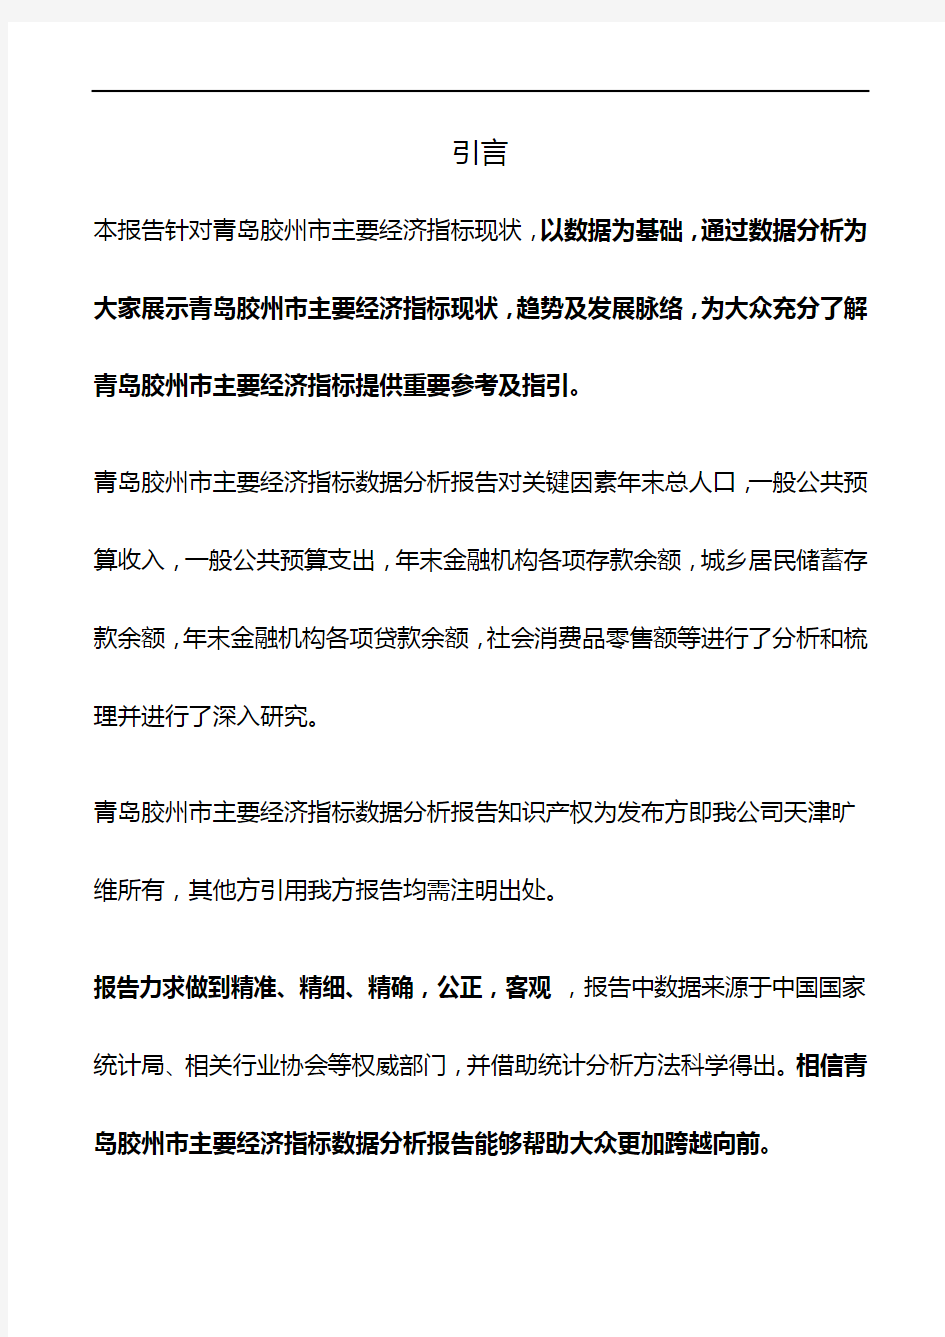 山东省青岛胶州市主要经济指标3年数据分析报告2019版